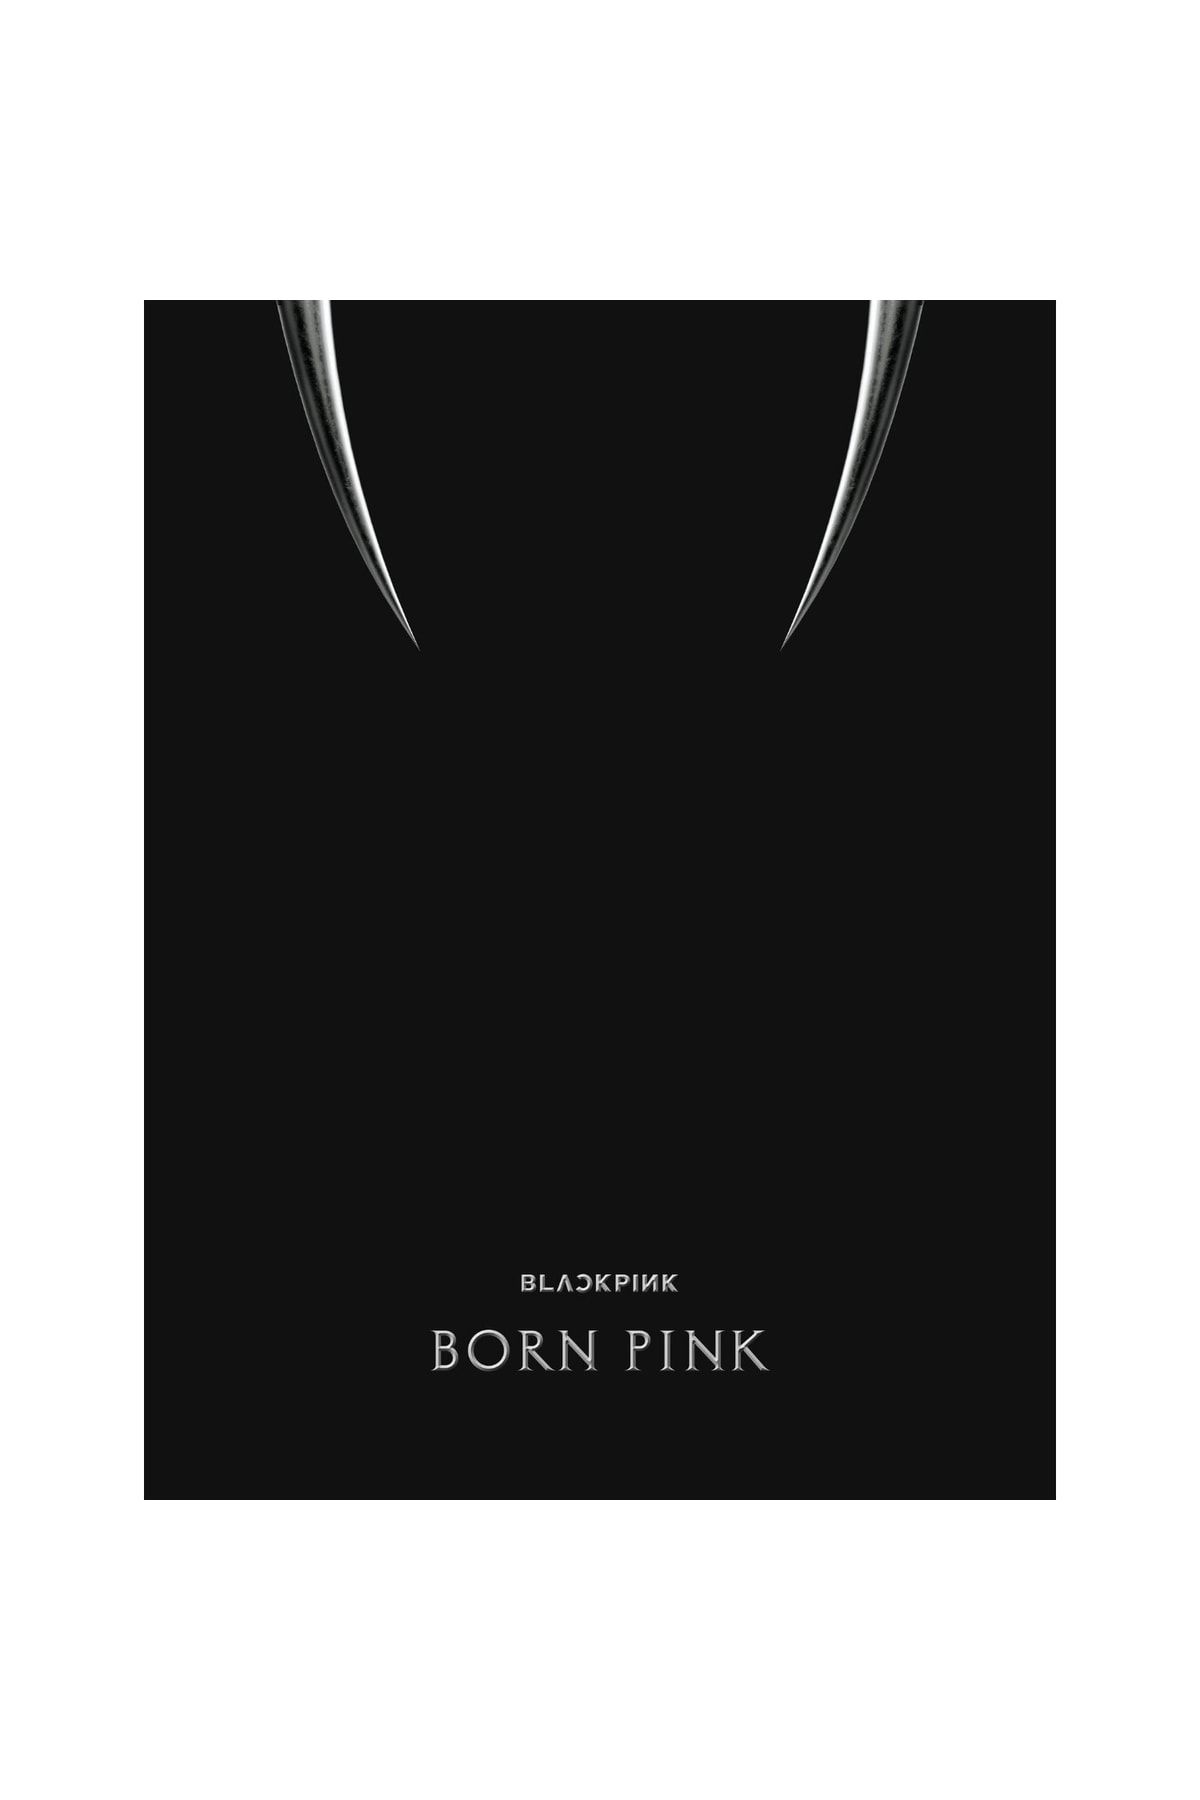 Kpop Dünyasi Blackpınk - 2nd Album [born Pınk] - Black Versiyon